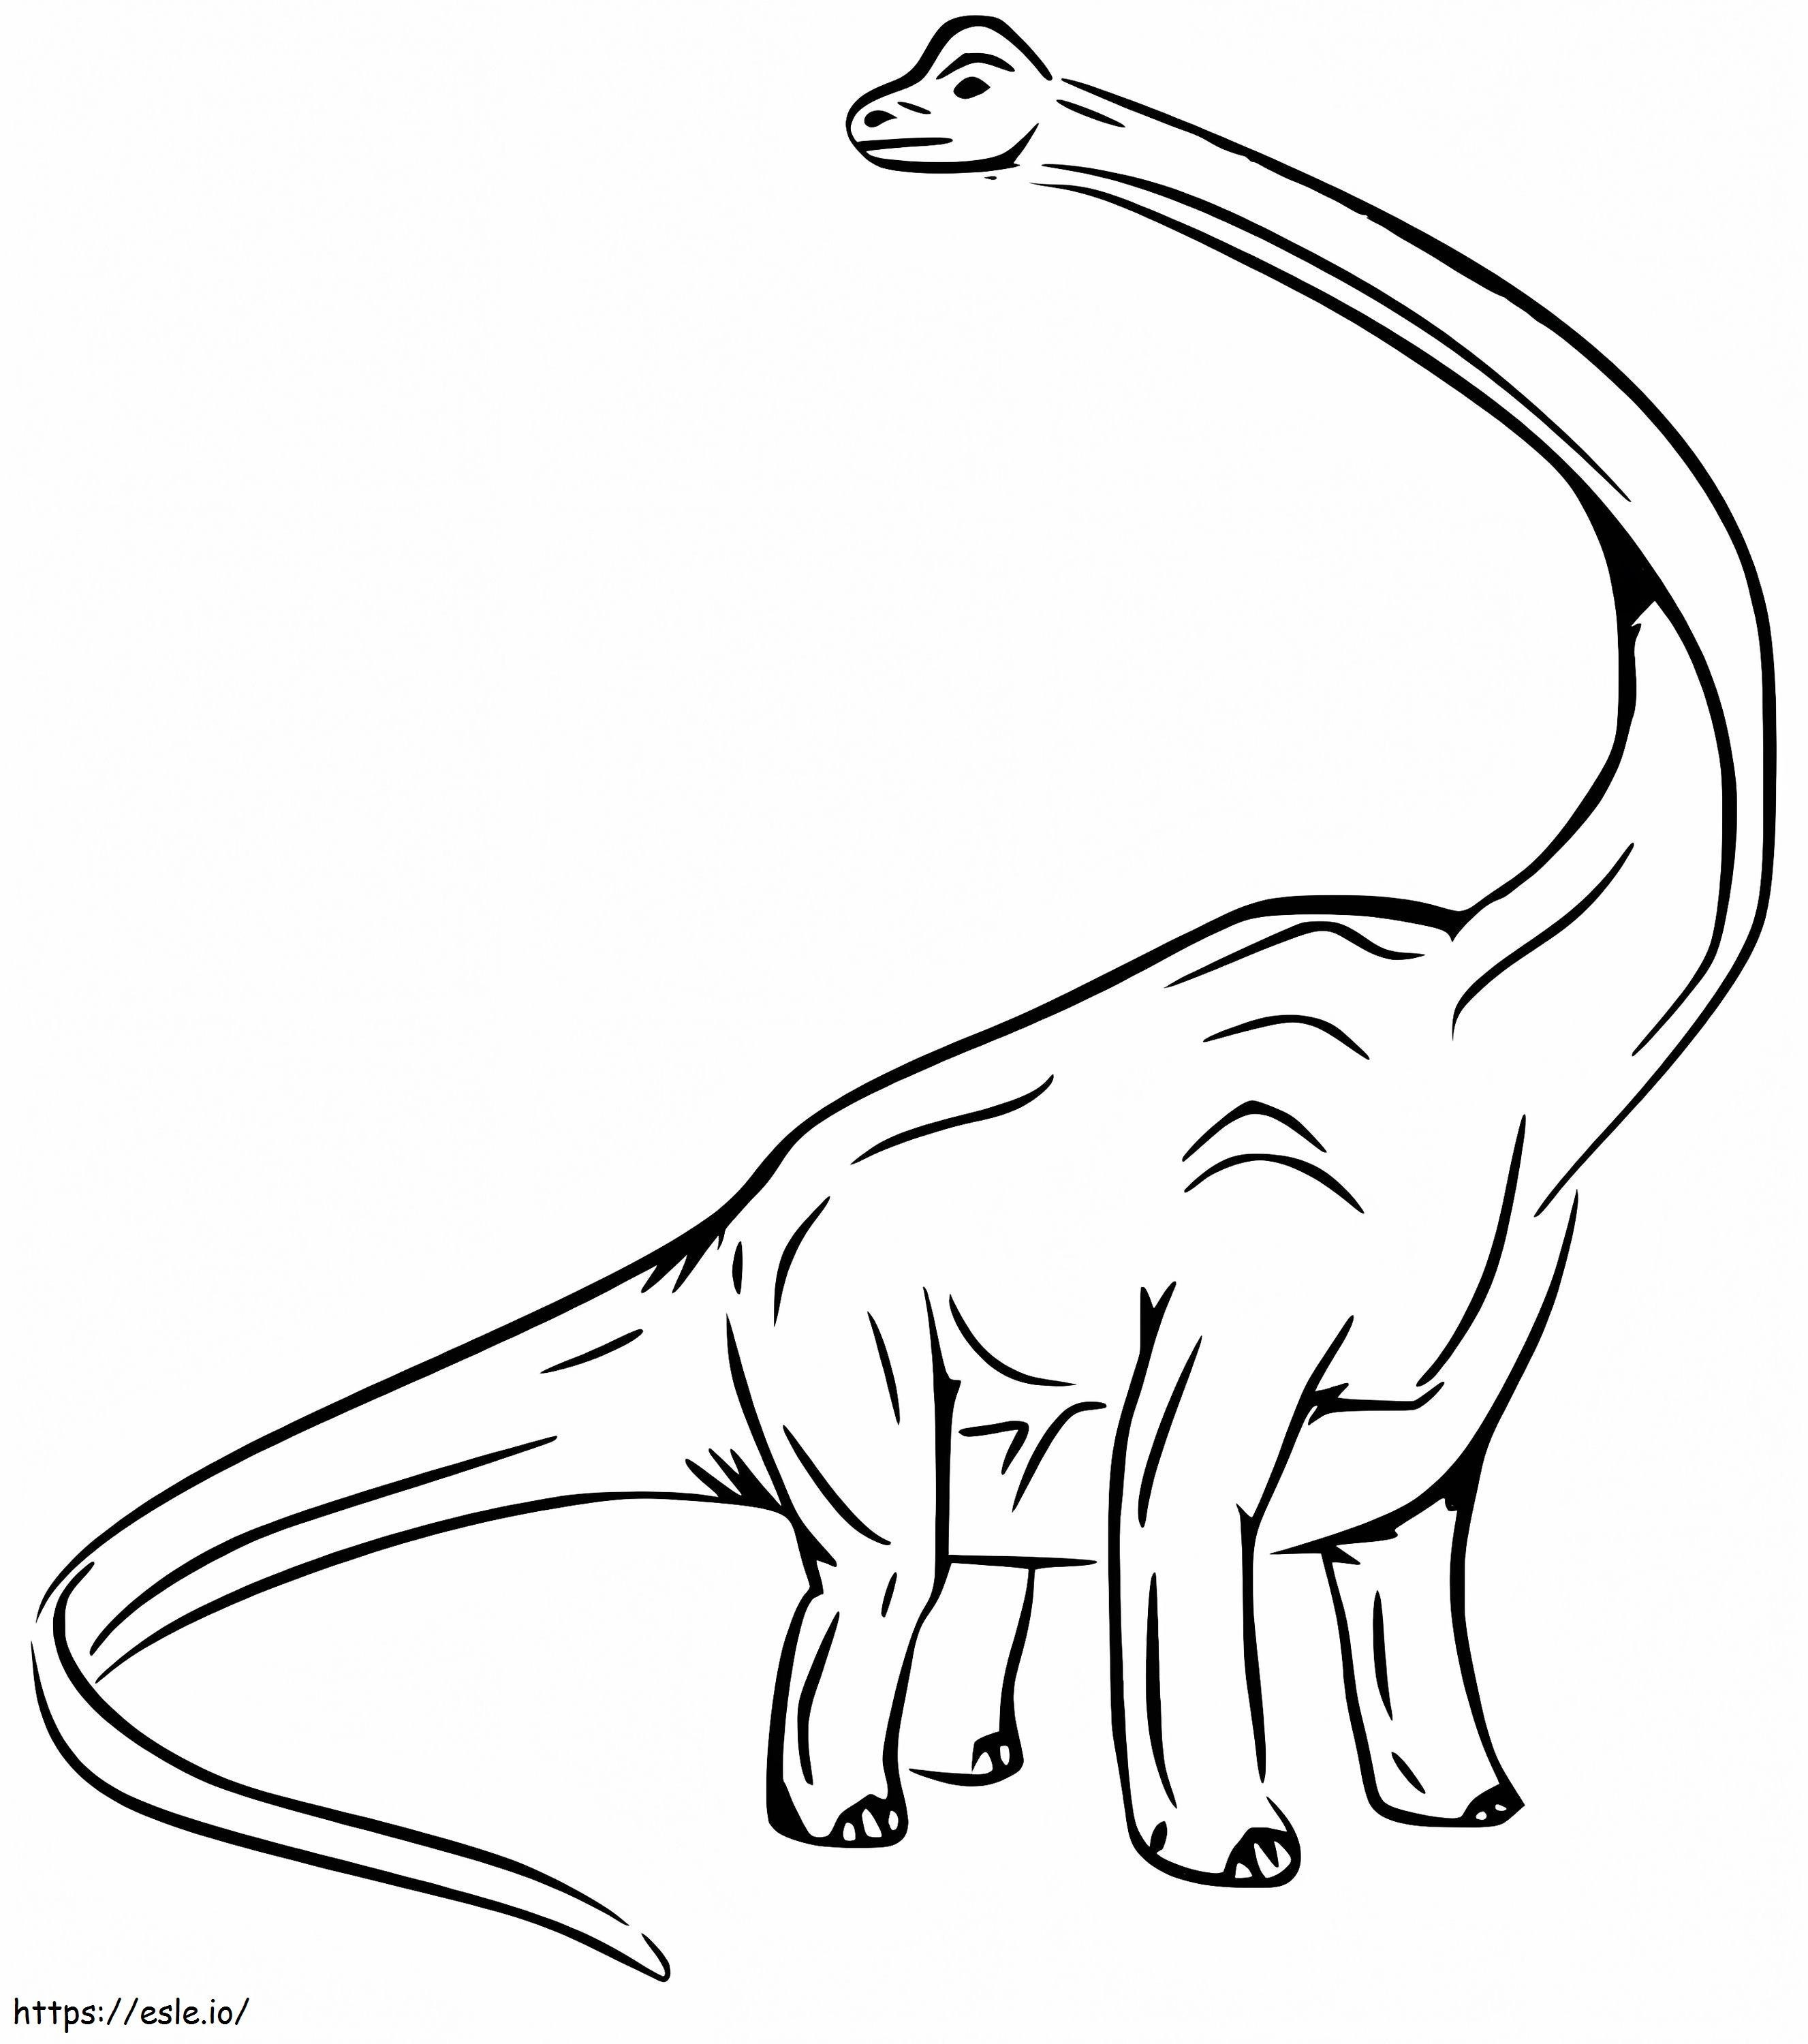 Brachiosaurus uriaș de colorat